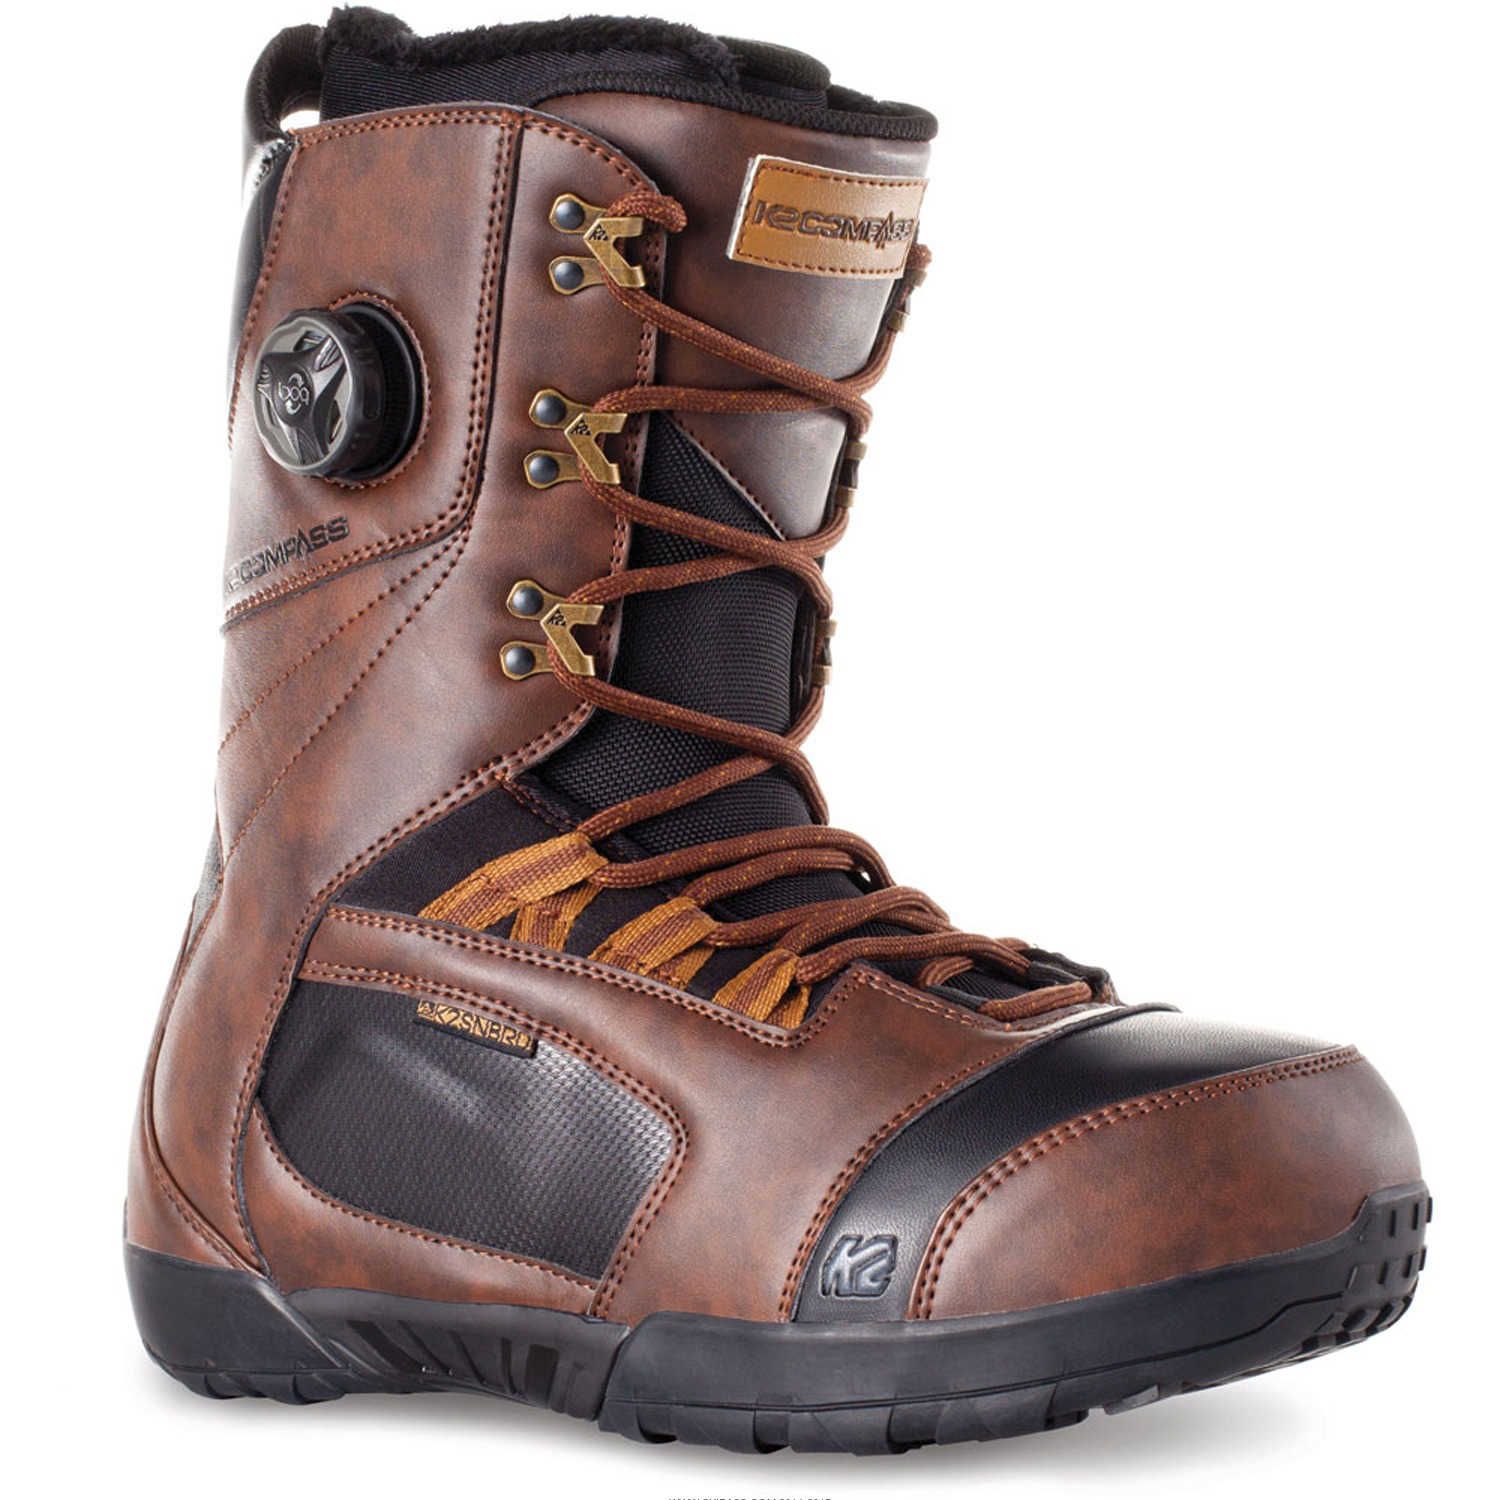 Boots de snowboard K2 Compass 2014 - Brown